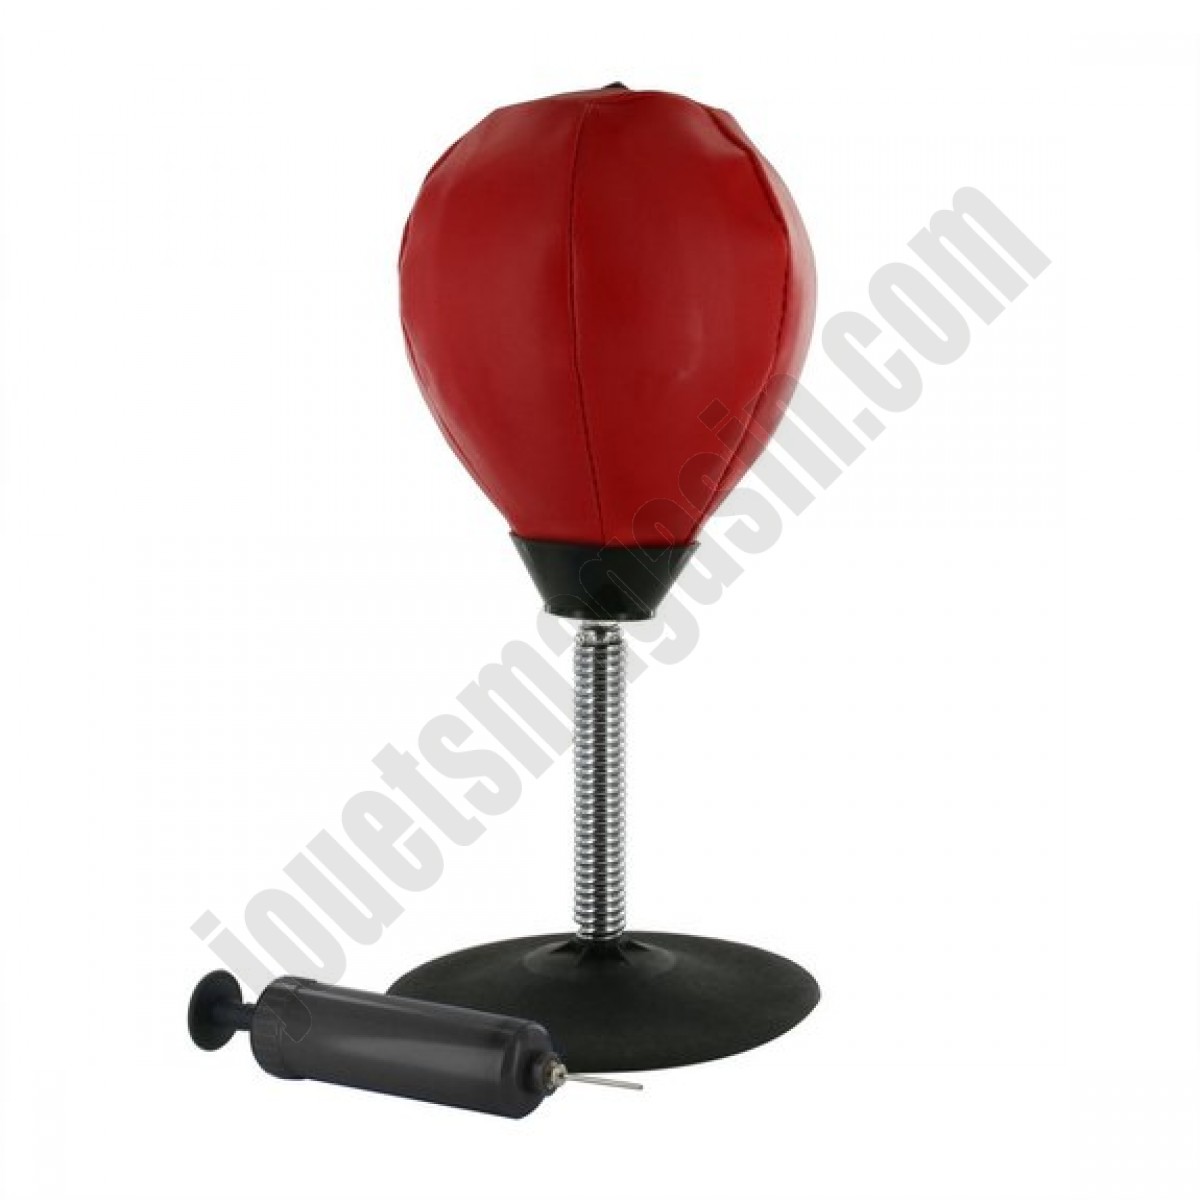 Nouveauté Punching-ball Gonflable de Table ◆◆◆ Nouveau - Nouveauté Punching-ball Gonflable de Table ◆◆◆ Nouveau